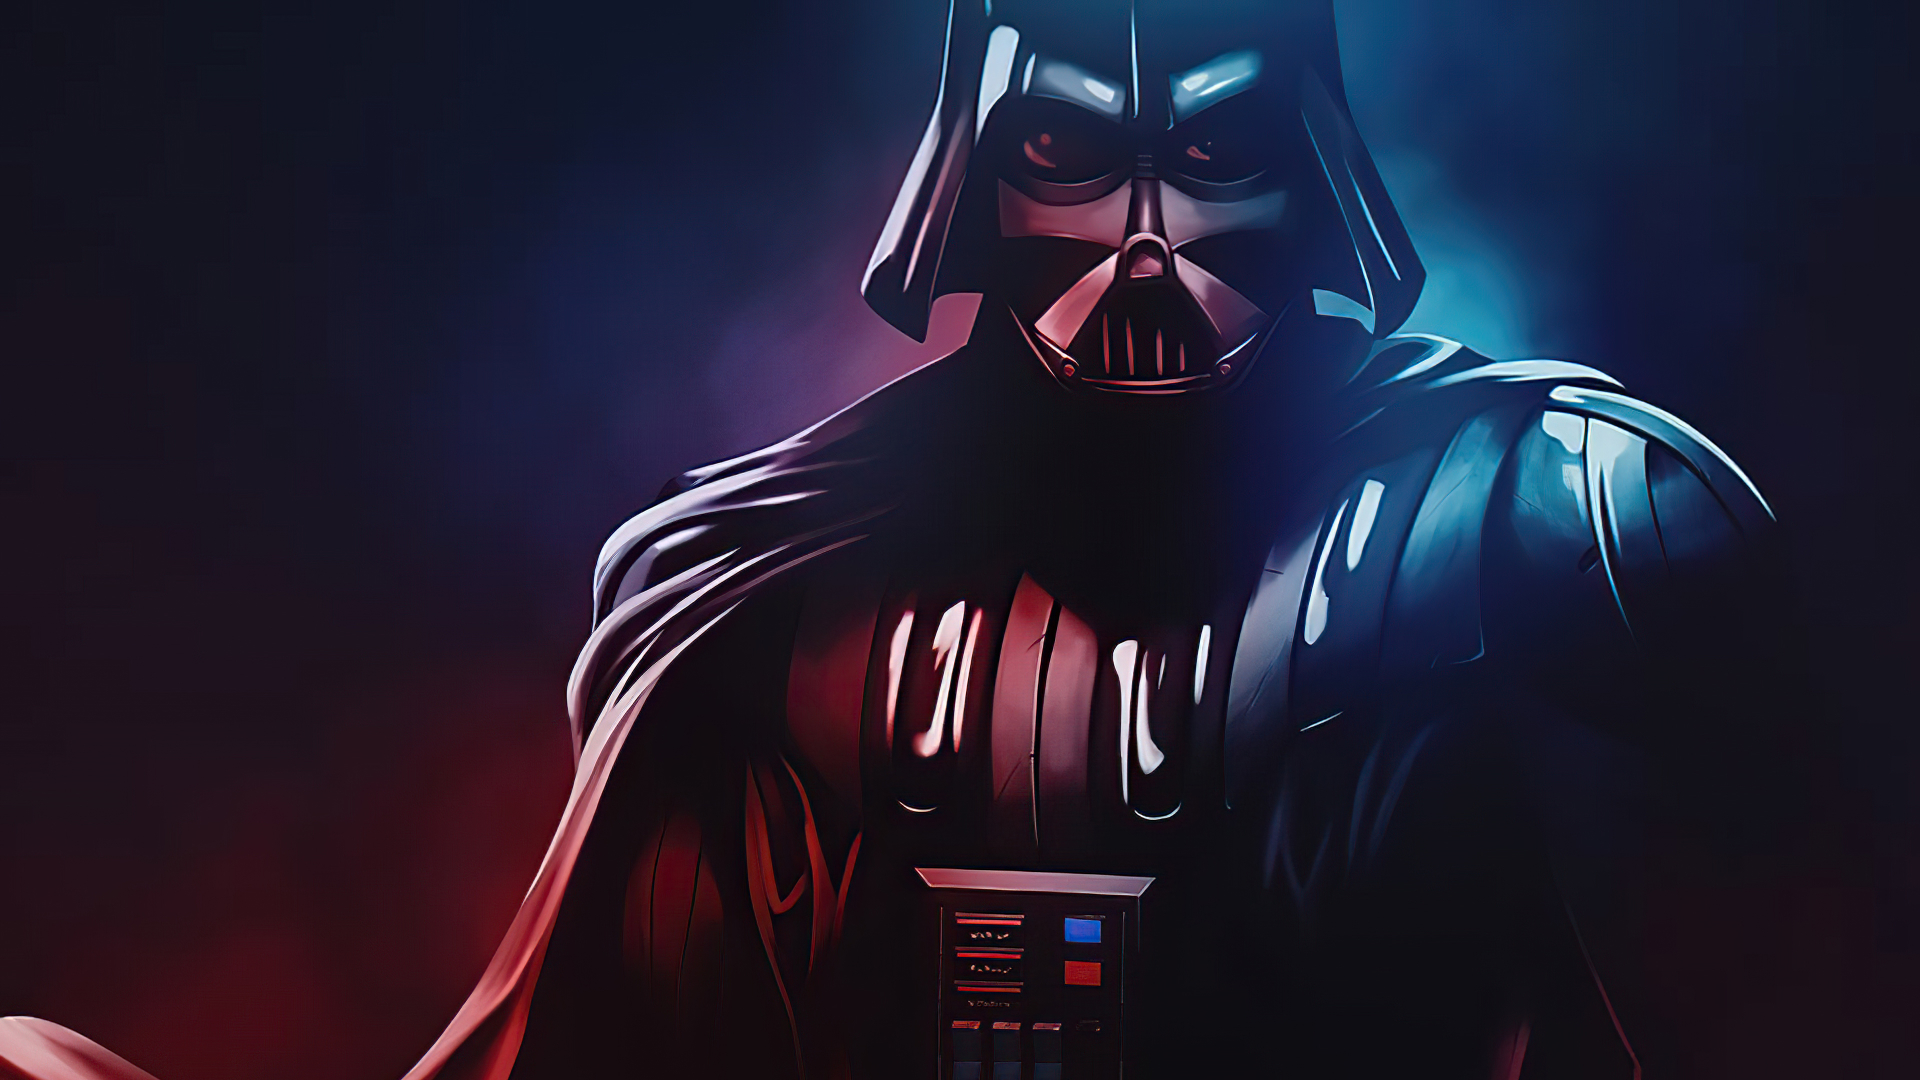 1920x1080 Resolution Darth Vader Cool Star Wars Art 1080P Laptop Full HD Wallpaper - Wallpapers Den